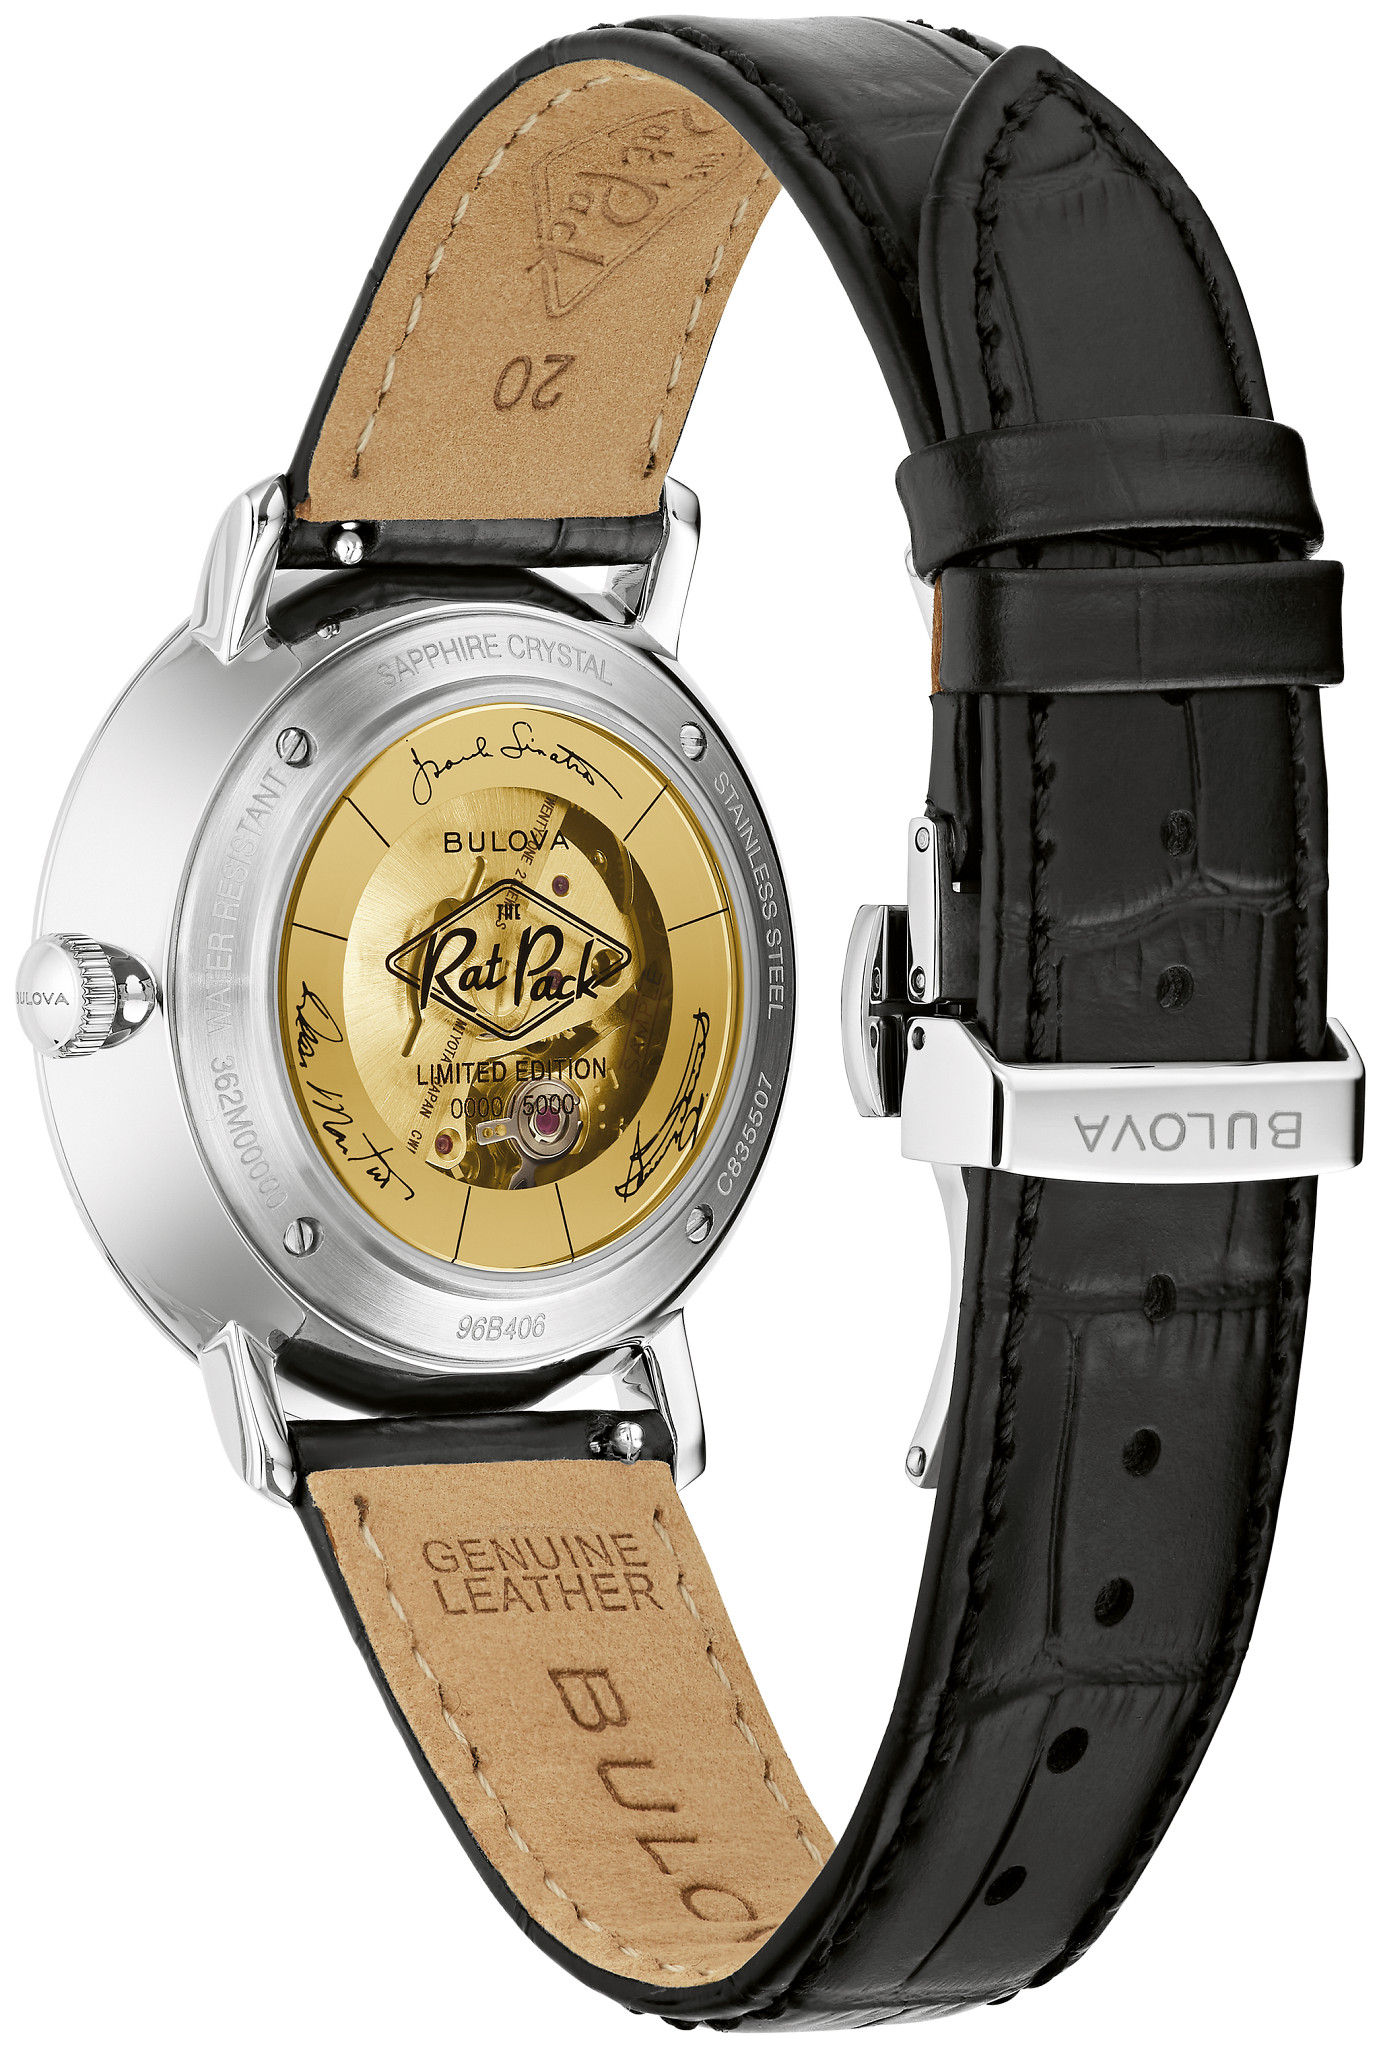 Custom Wrist Watch Packaging boxes | Custom-Printed Wrist Watch Packaging  Boxes with Logo | Wrist Watch Boxes Wholesale | Emenac Packaging USA